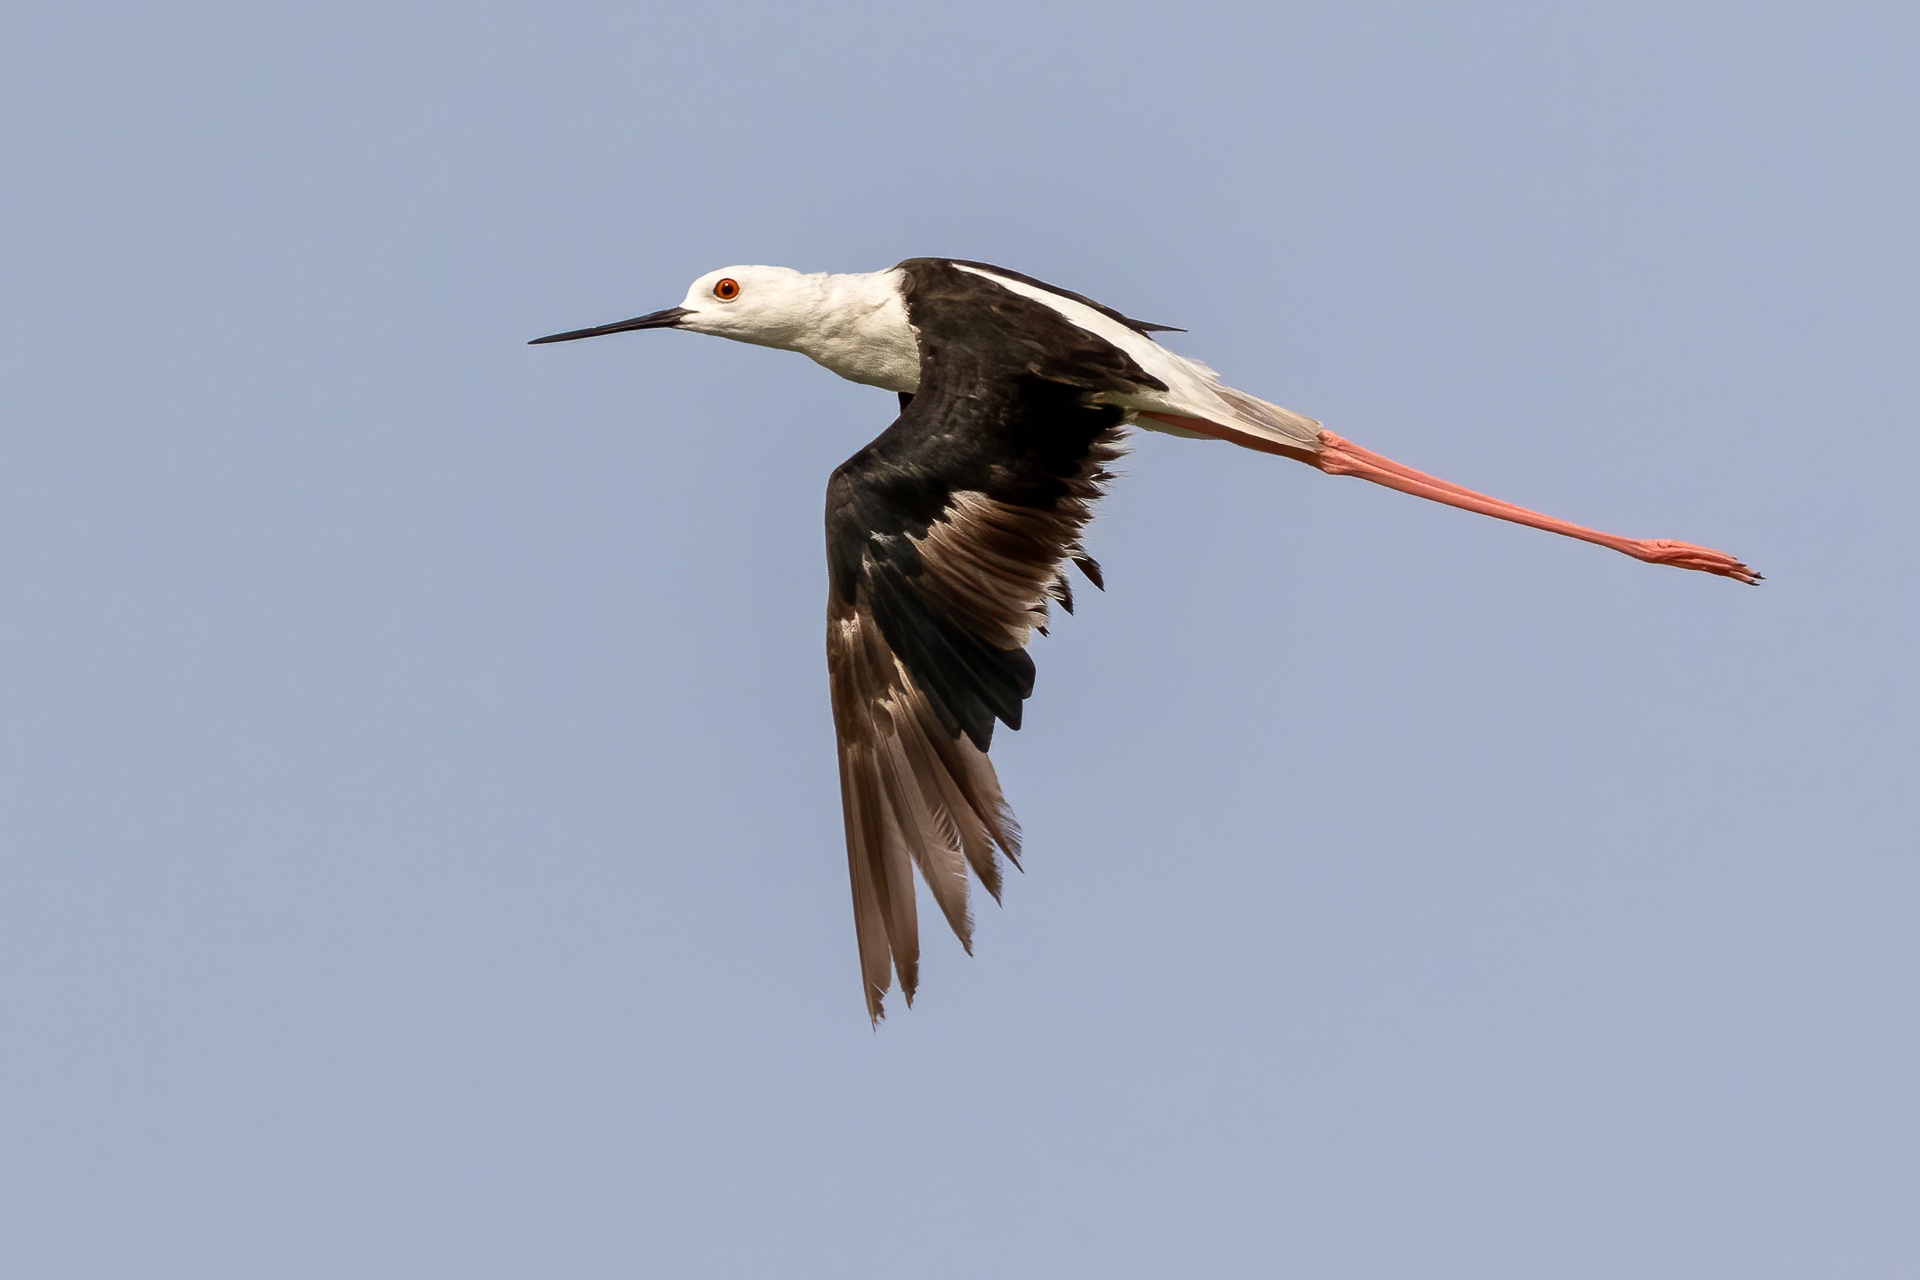 Black-winged stilt in flight